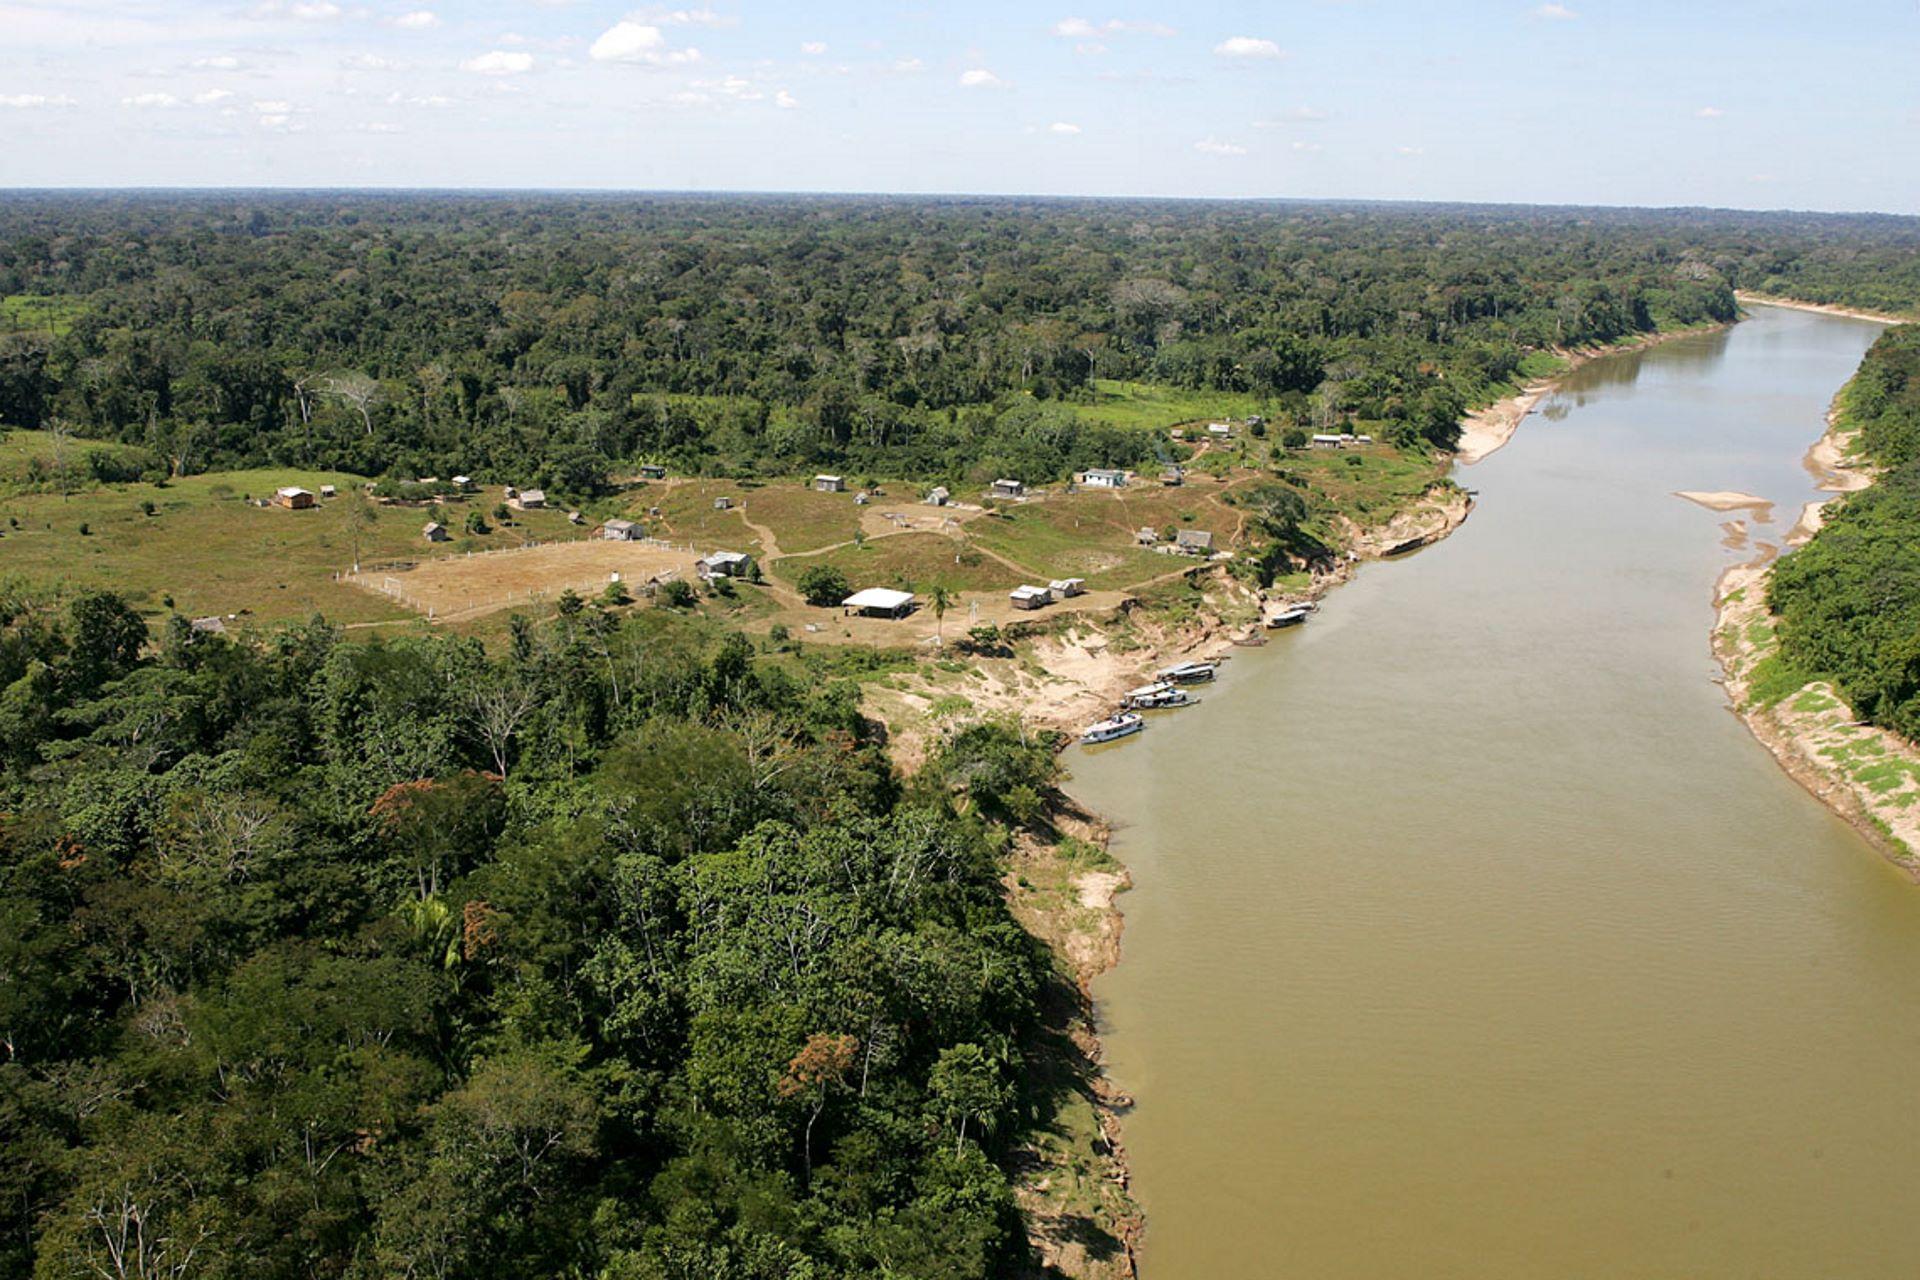 Projeto quer construir uma estrada que corta parte preservada da floresta amazônica no Acre